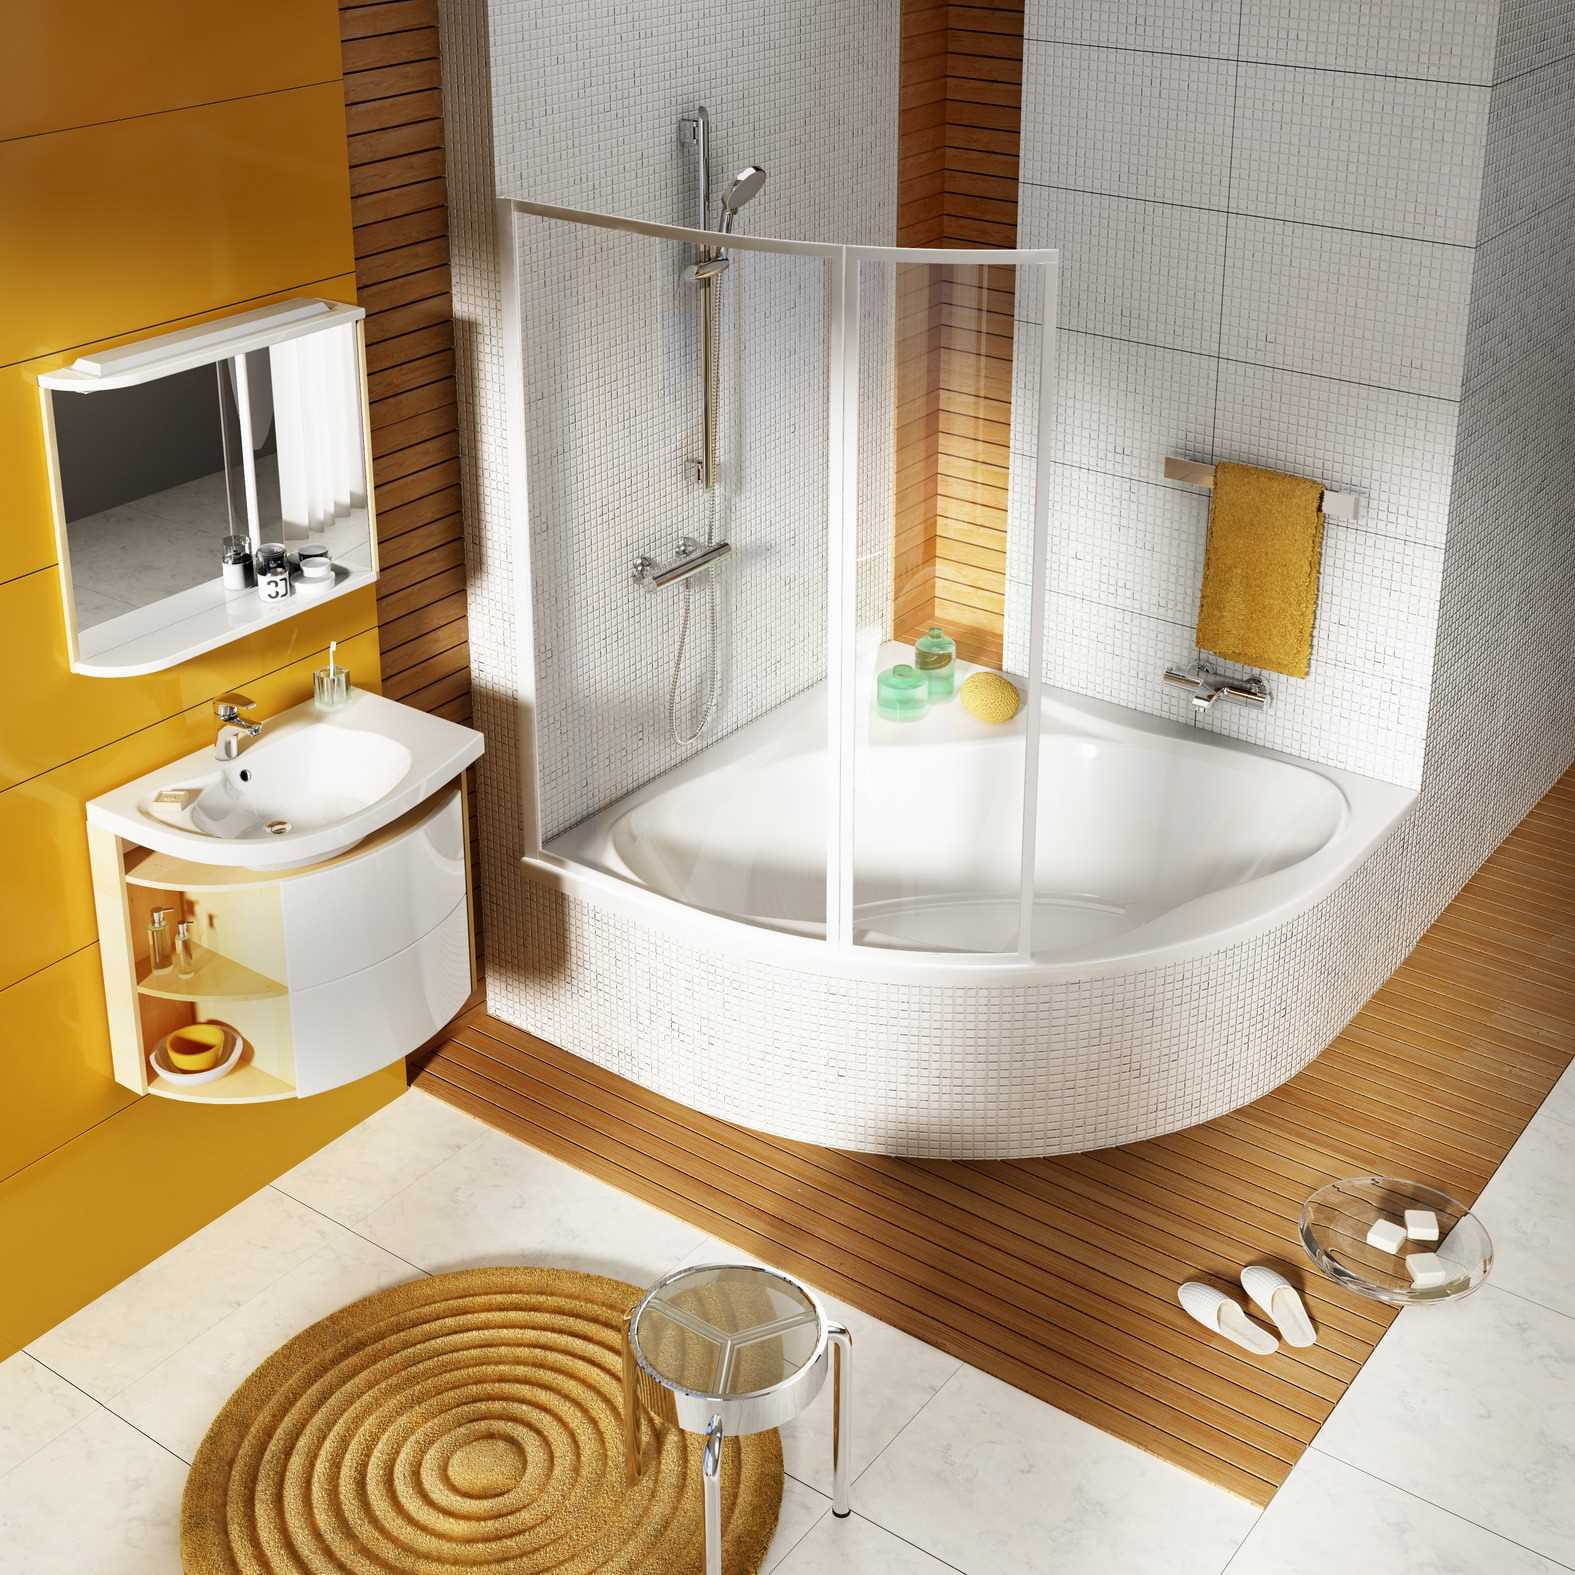 idée d'un style insolite d'une salle de bain avec baignoire d'angle